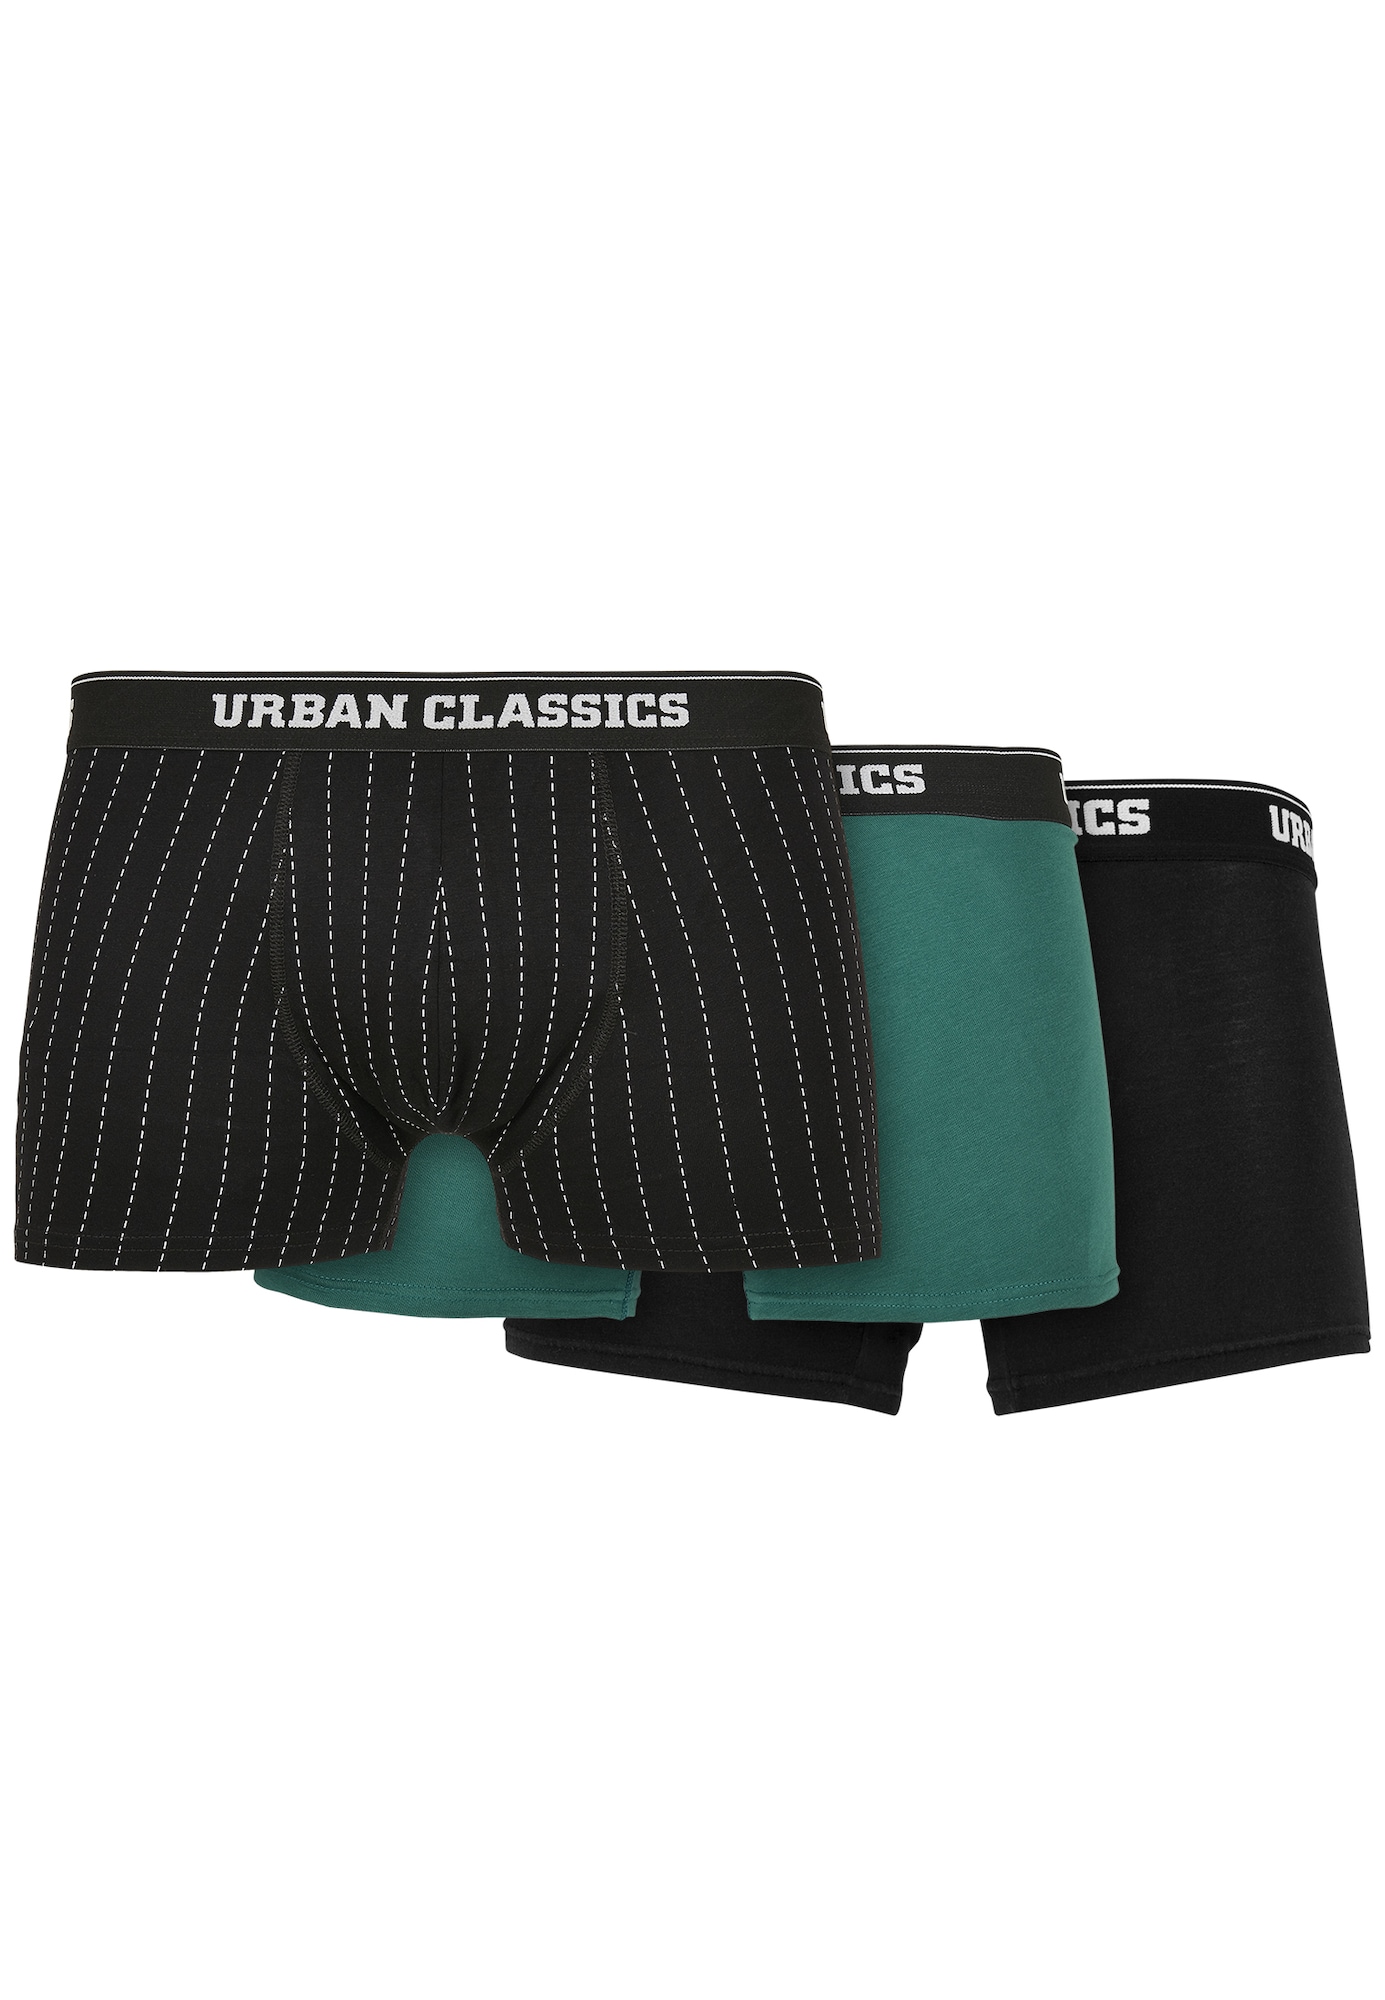 Urban Classics Boxer trumpikės juoda / balta / smaragdinė spalva